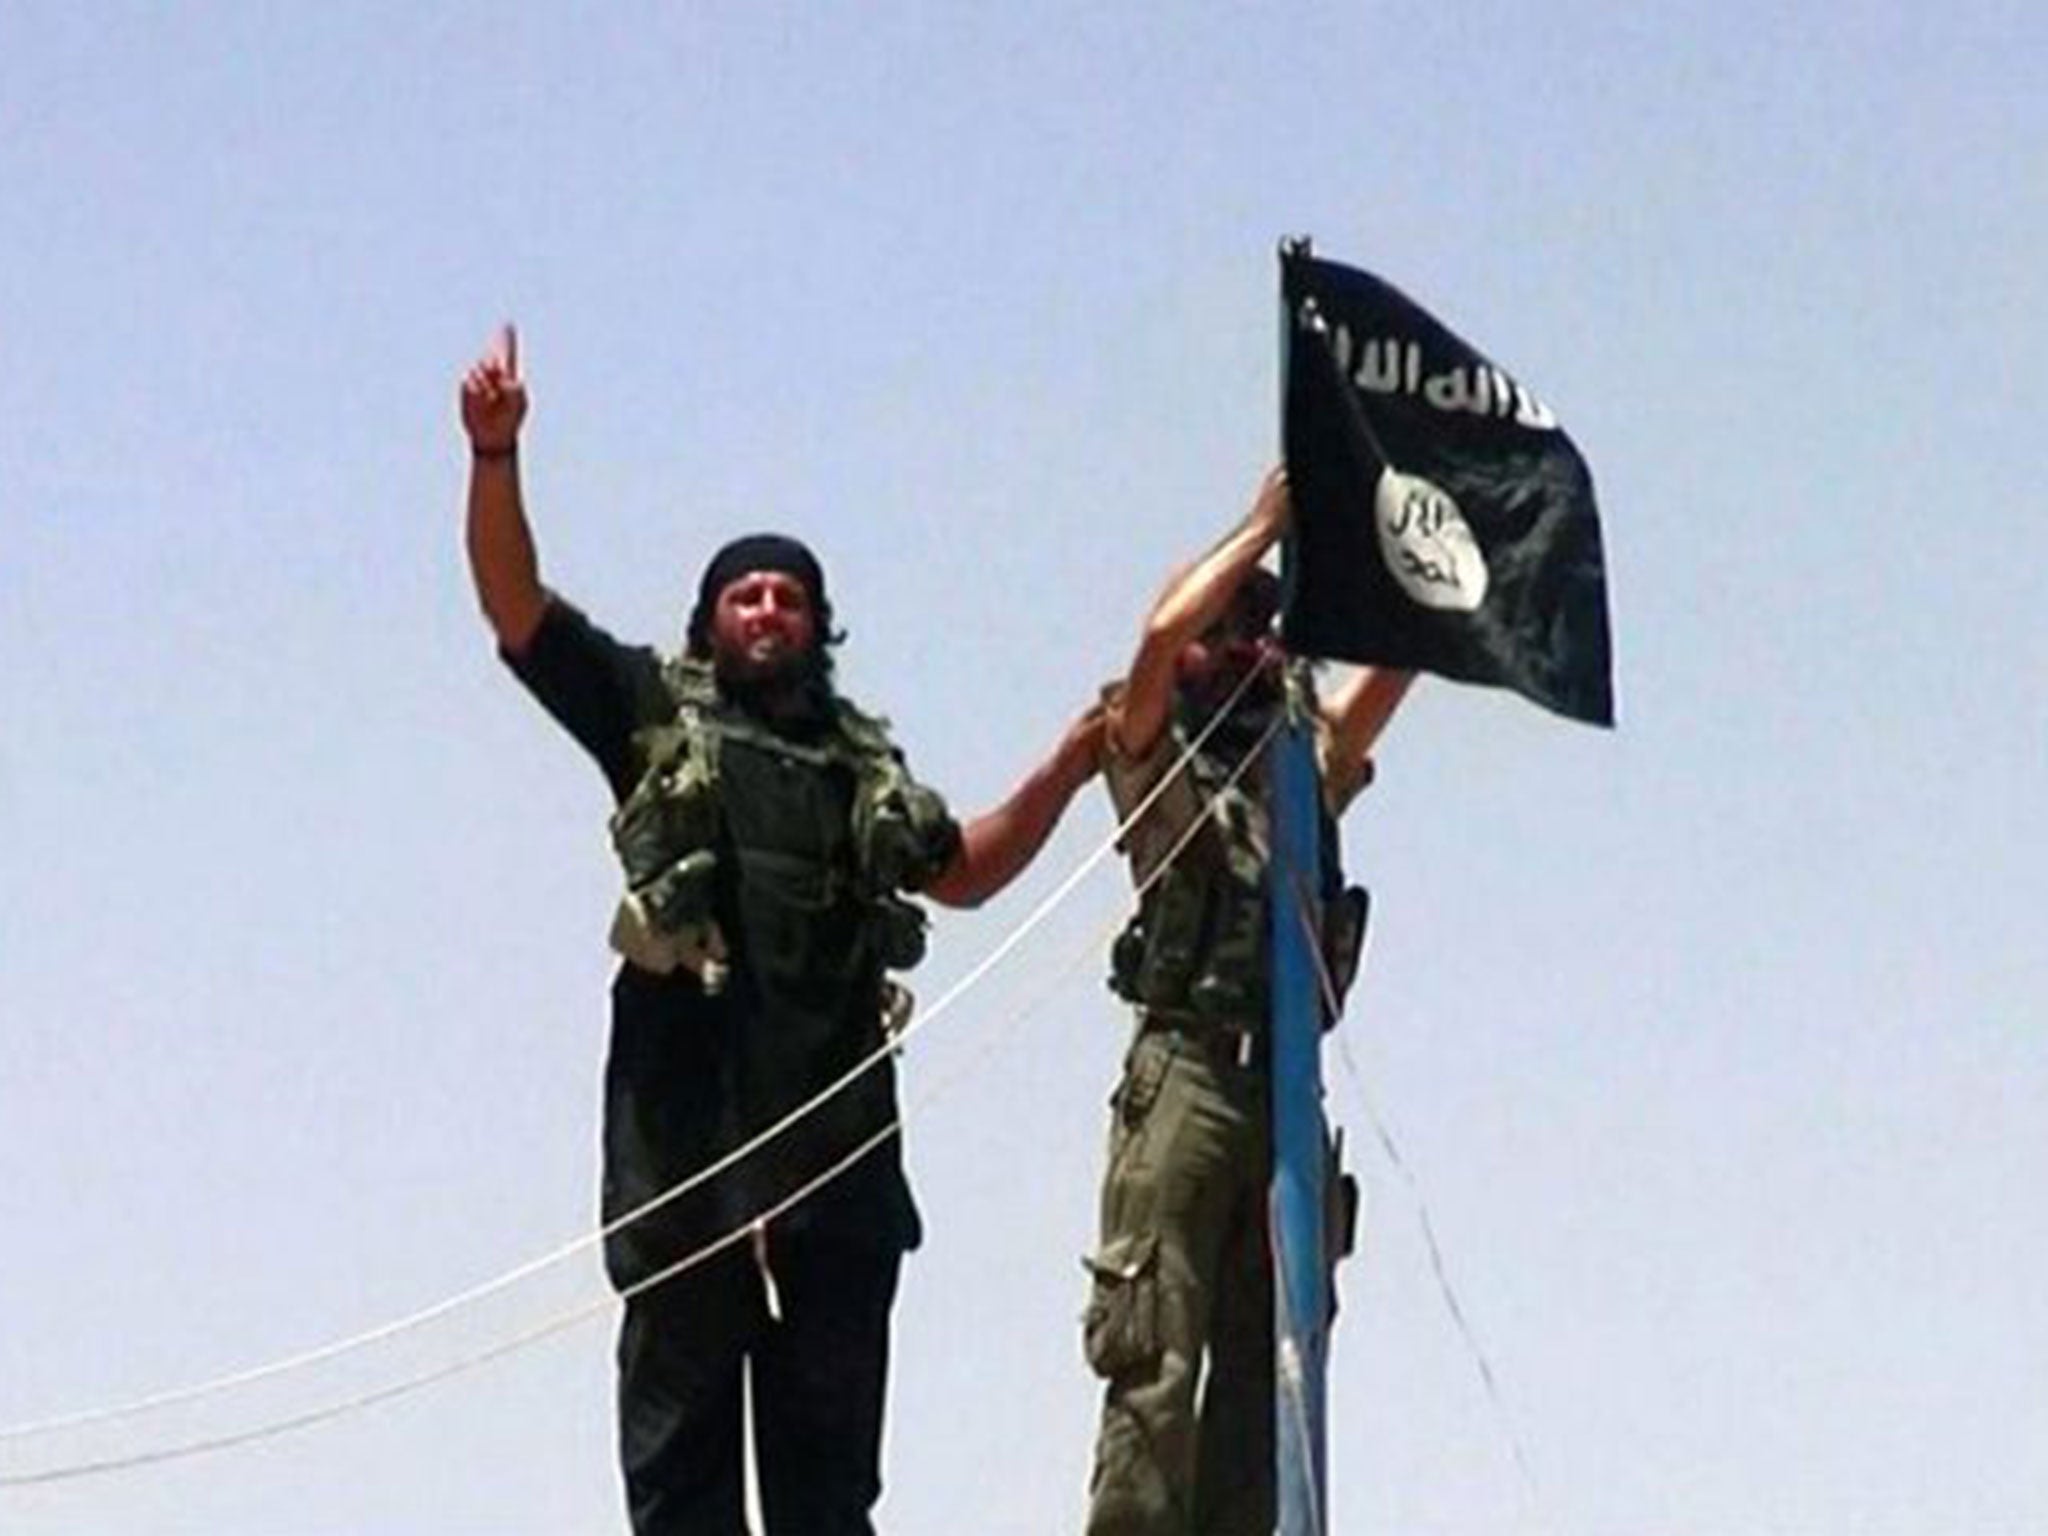 Militants fly the jihadist flag 